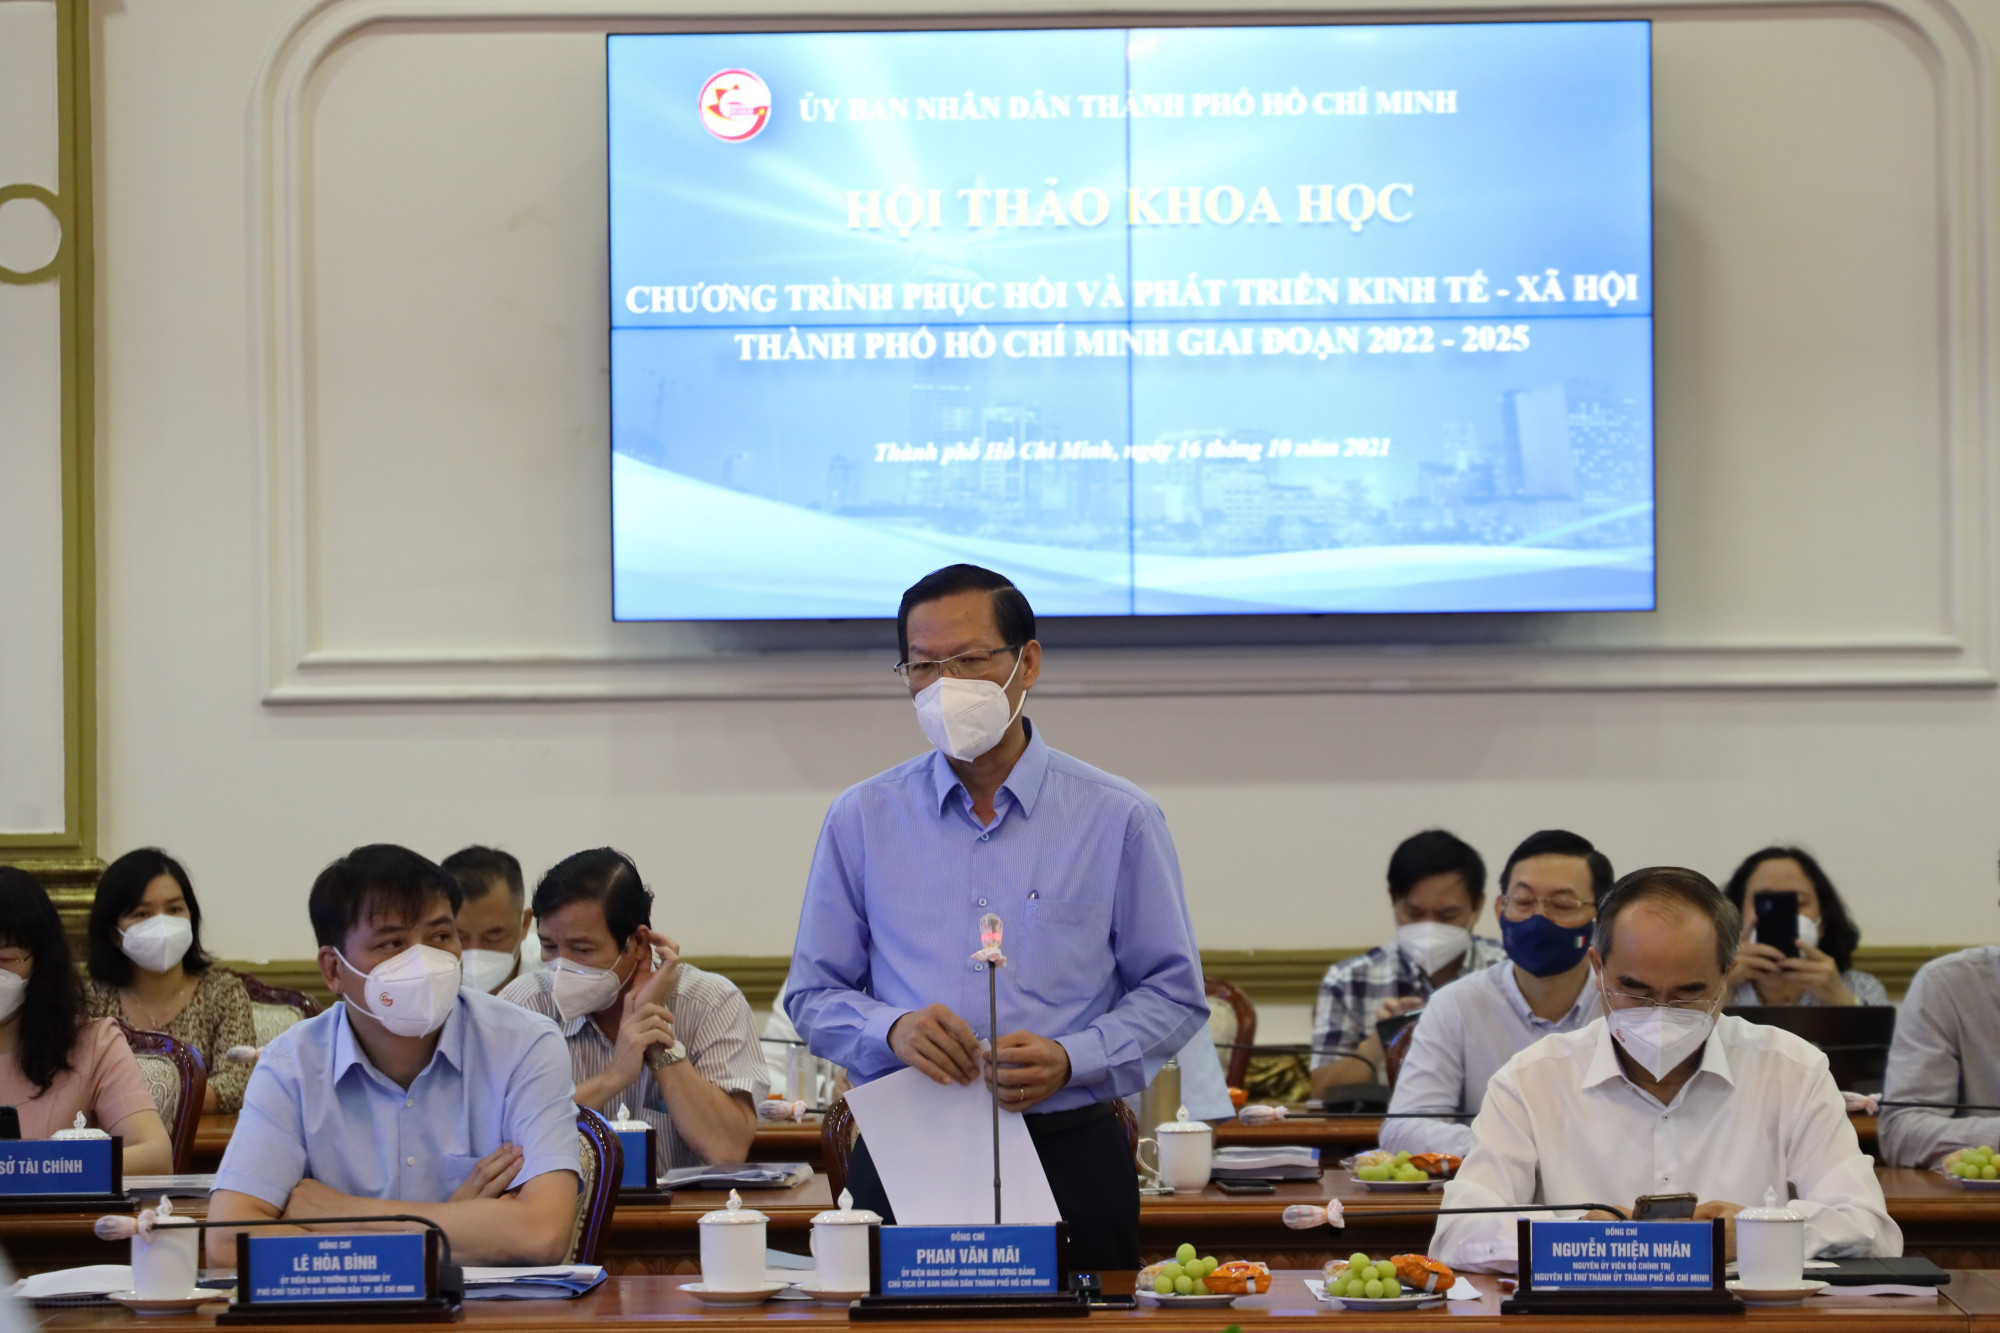 Chủ tịch UBND TPHCM Phan Văn Mãi đặt hàng bài toán kinh tế cho các chuyên gia, nhà khoa học, trên cơ sở ba vấn đề ông đặt ra tại hội thảo